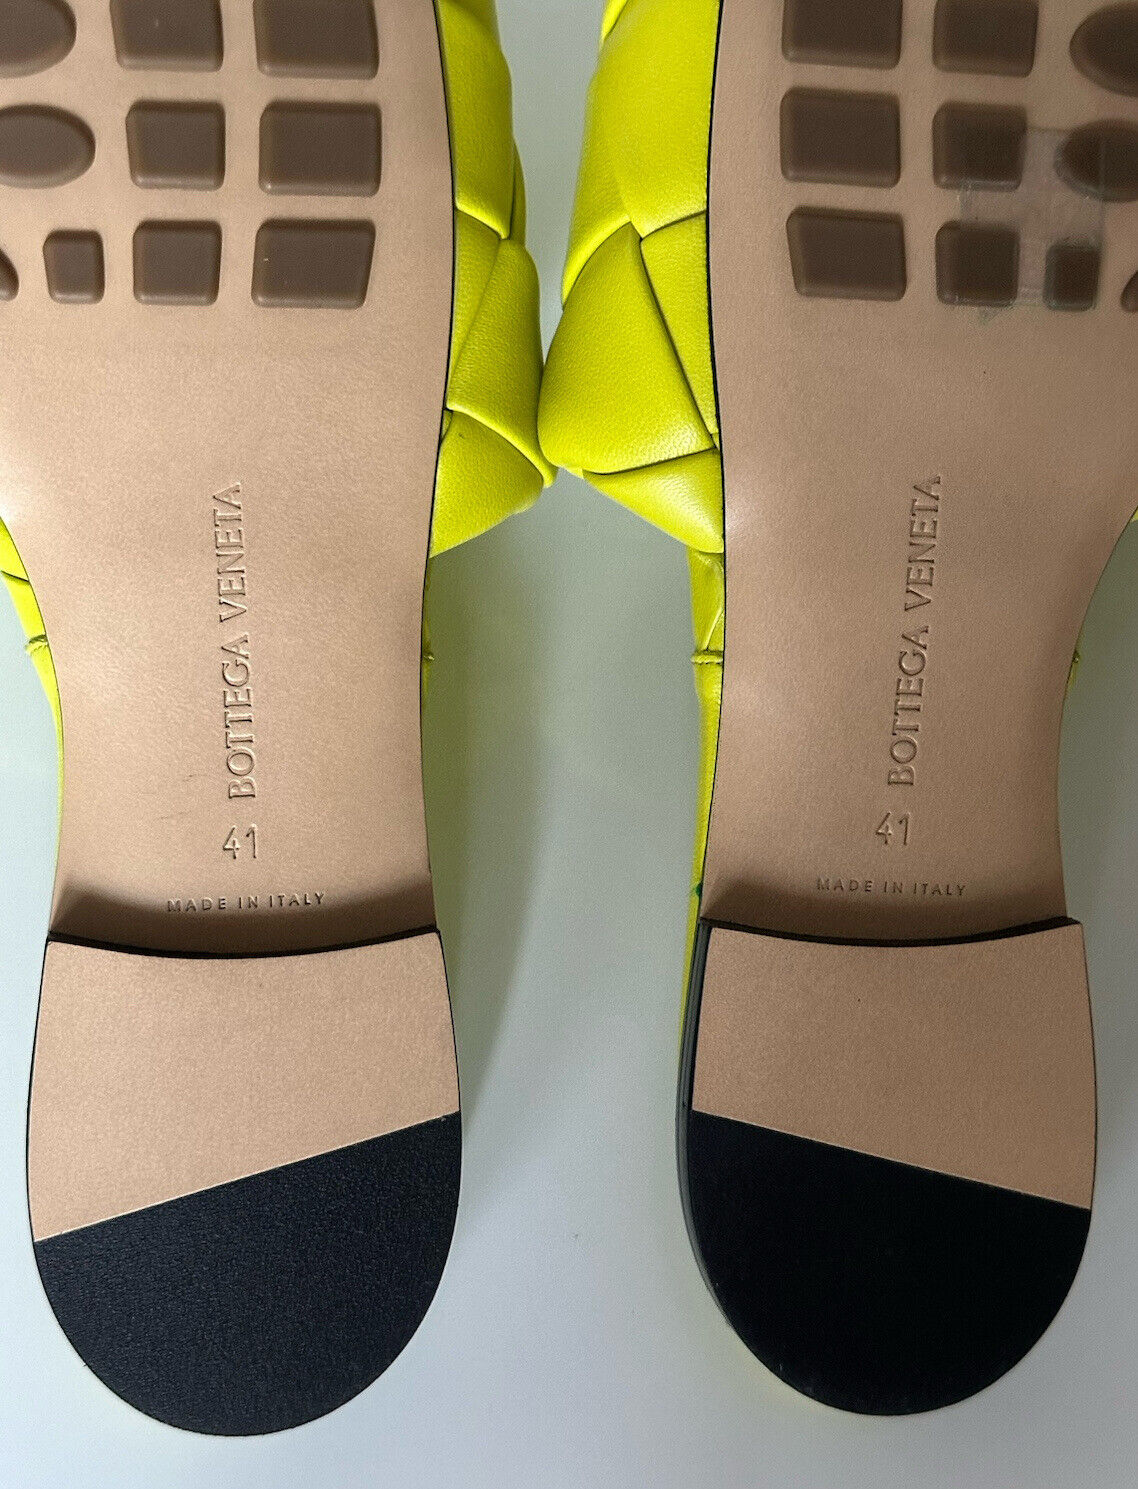 NWT 1350 долларов США Bottega Veneta Желтые лимонные сандалии на плоской подошве Туфли 11 США (41 евро) 608853 